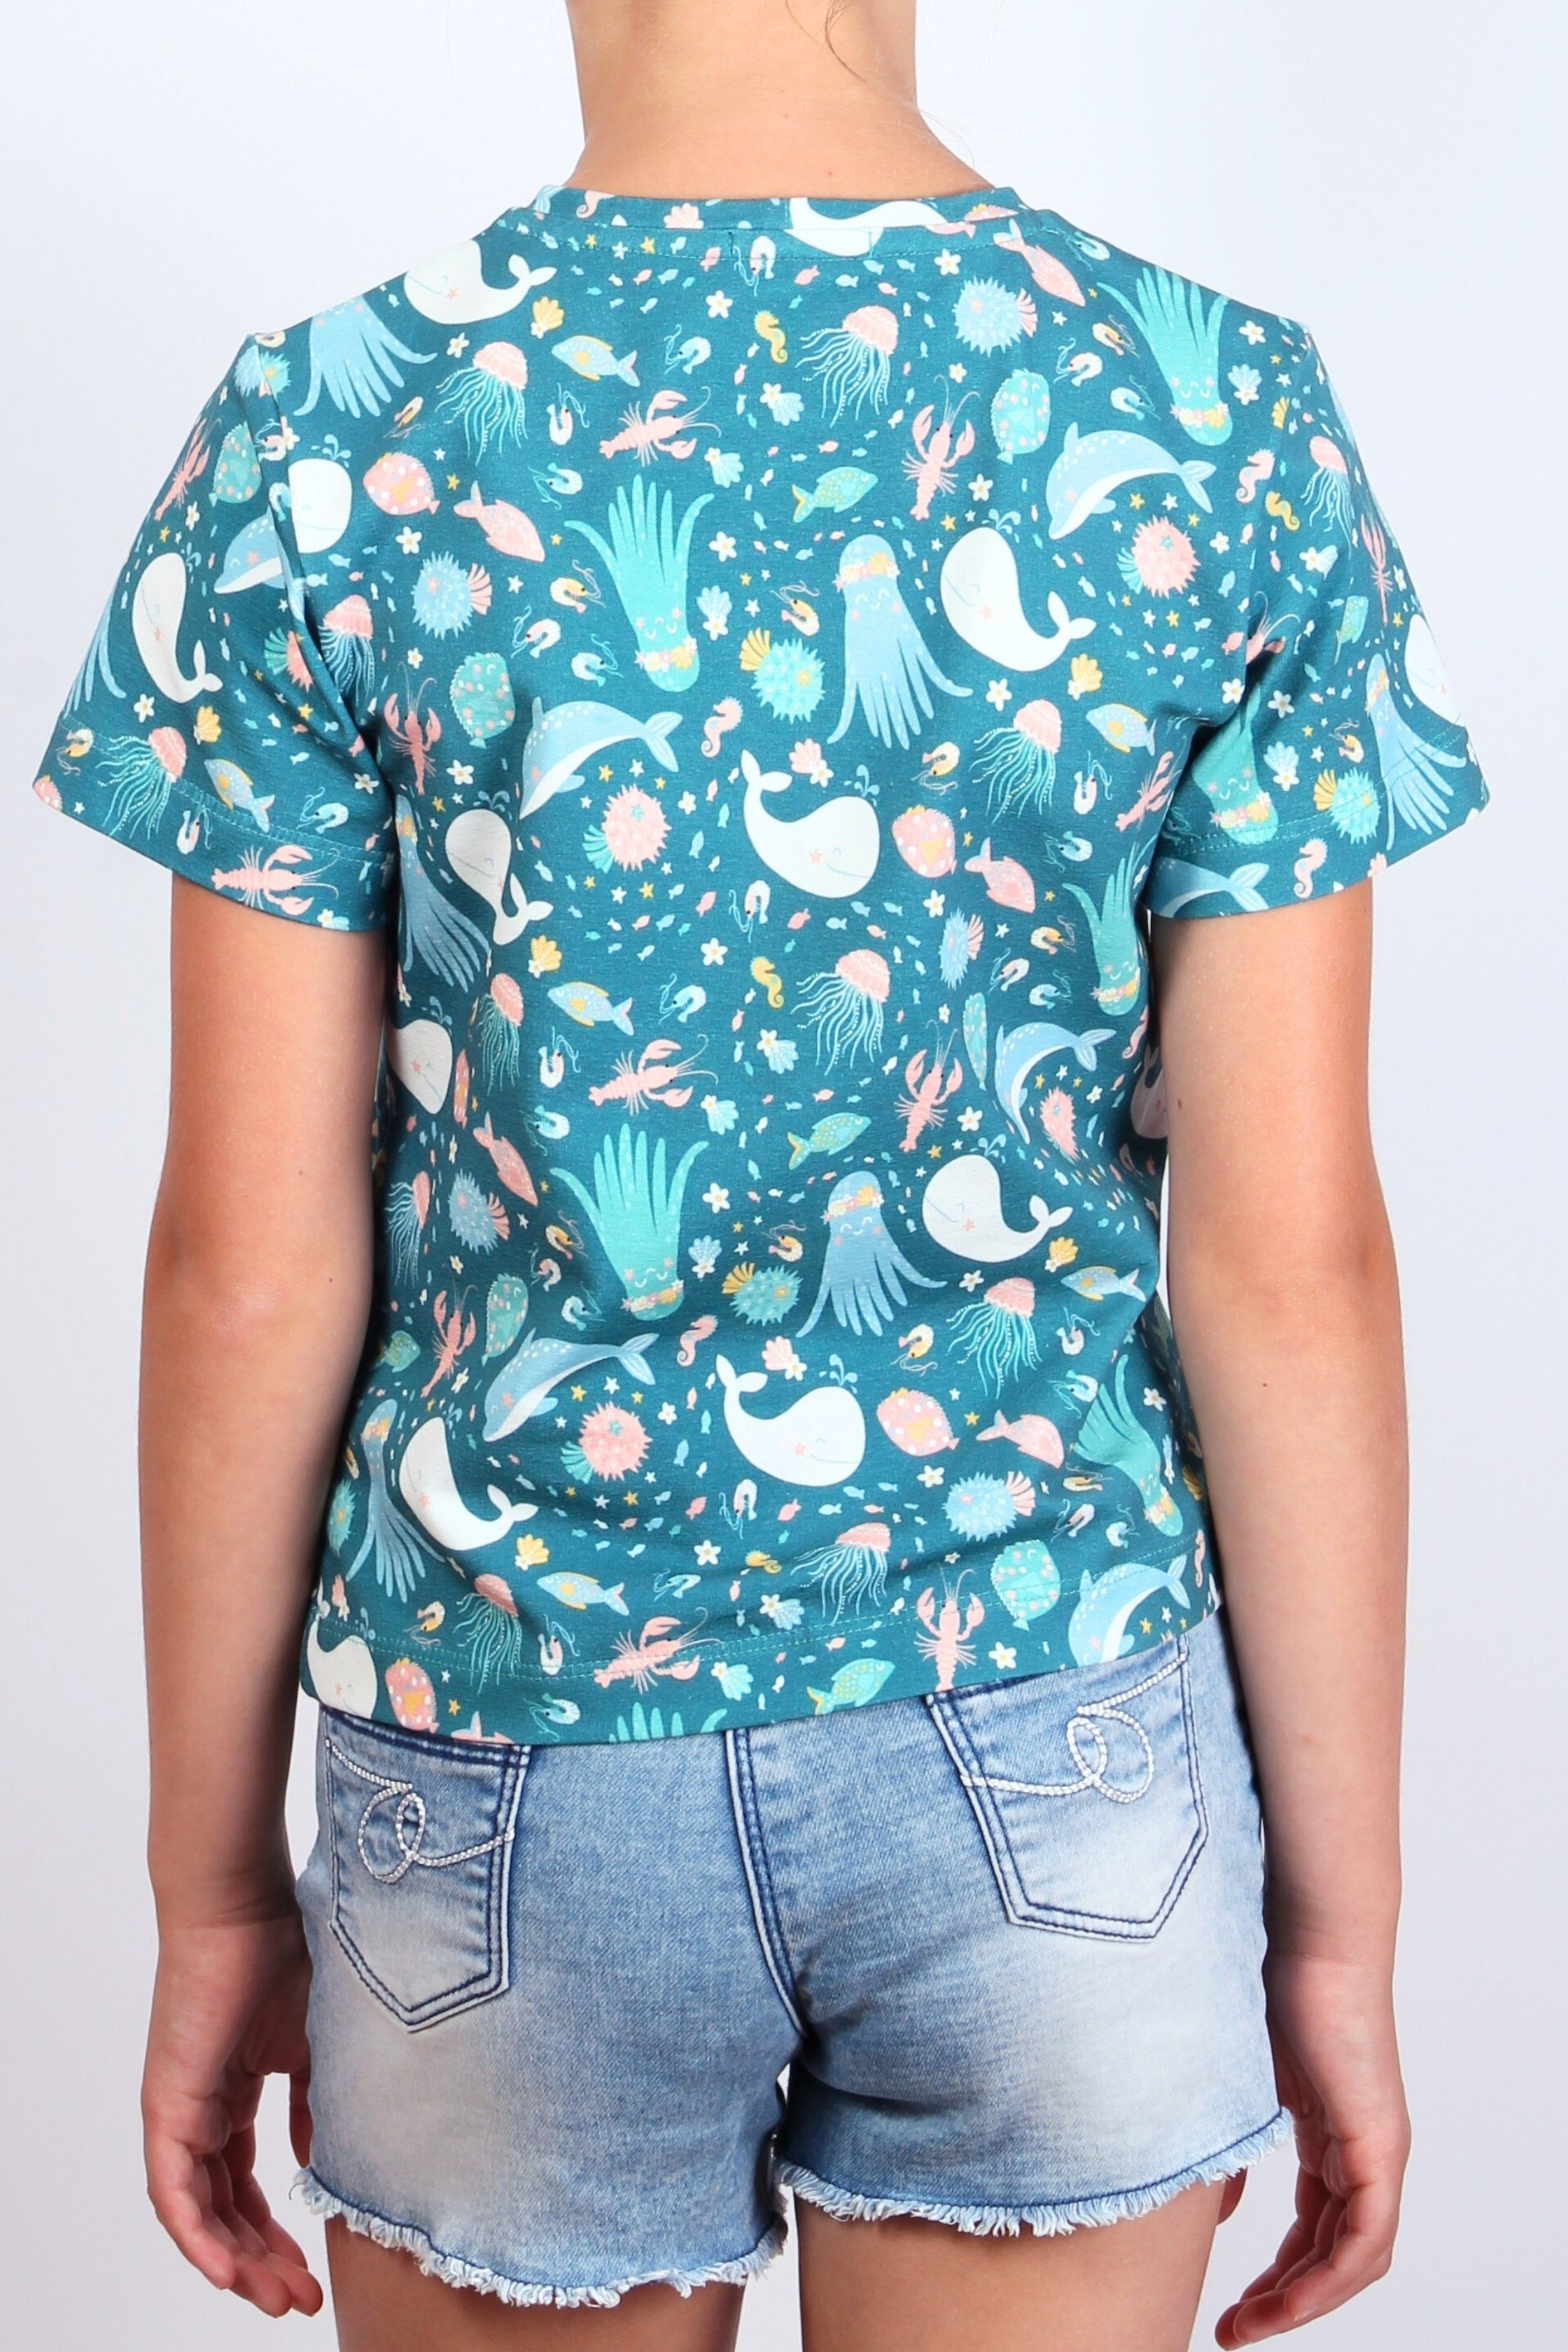 coolismo T-Shirt Print-Shirt für Produktion "Kleine Baumwolle, Alloverprint, Meereswelt" europäische Mädchen